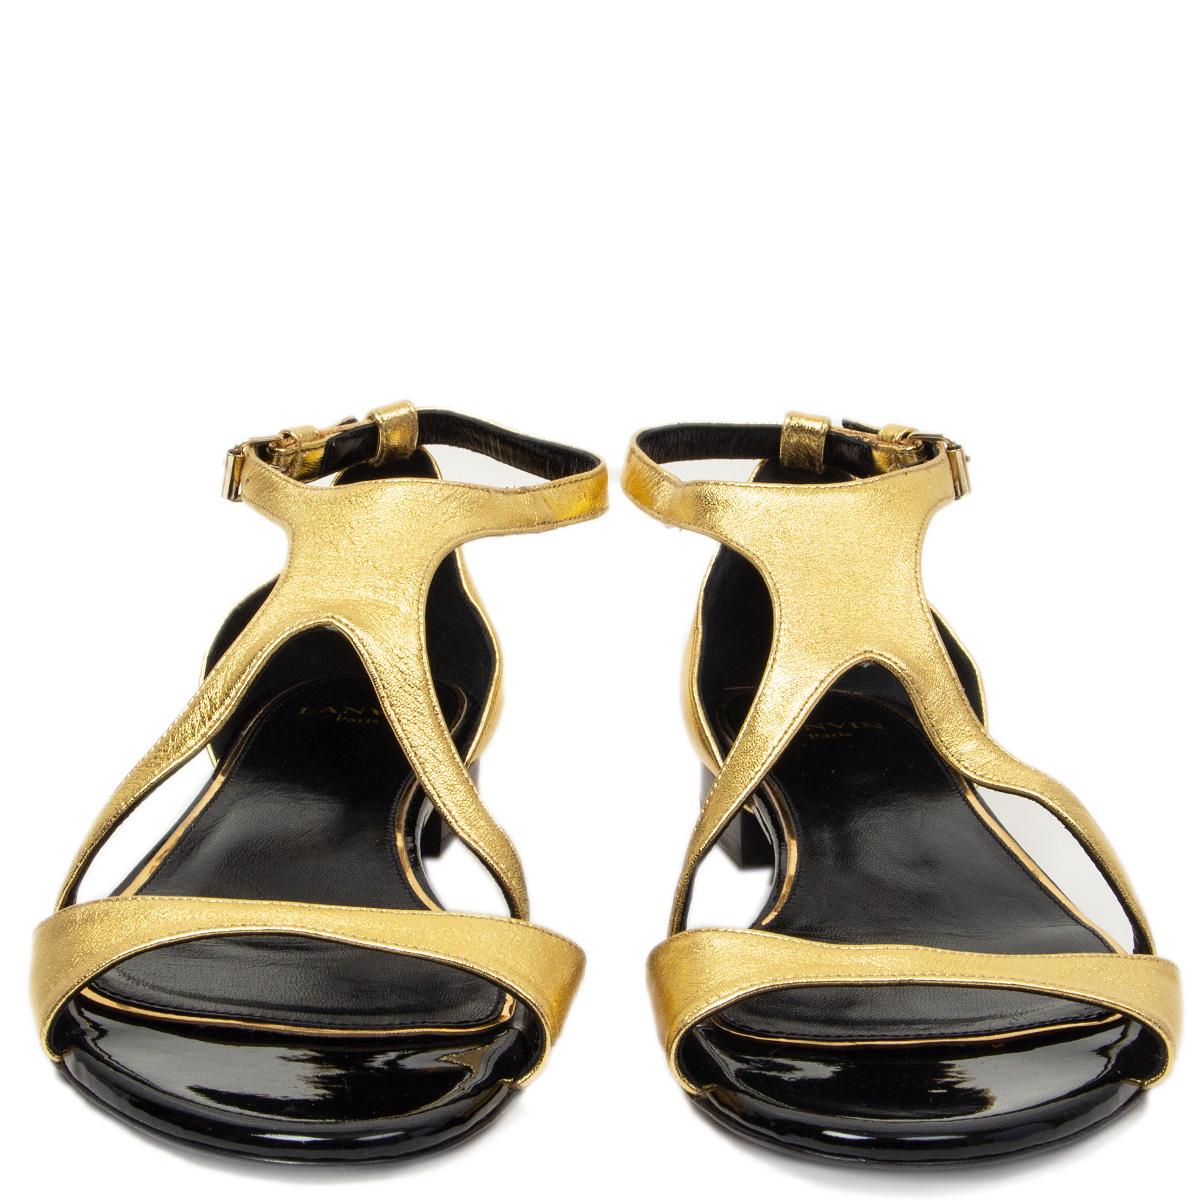 100% authentische Lanvin flache Sandalen mit Knöchelriemen aus goldfarbenem Metallic-Leder und schwarzem Lackleder an der Spitze. Wurden einmal innen getragen und sind in praktisch neuem Zustand.  

Messungen
Aufgedruckte